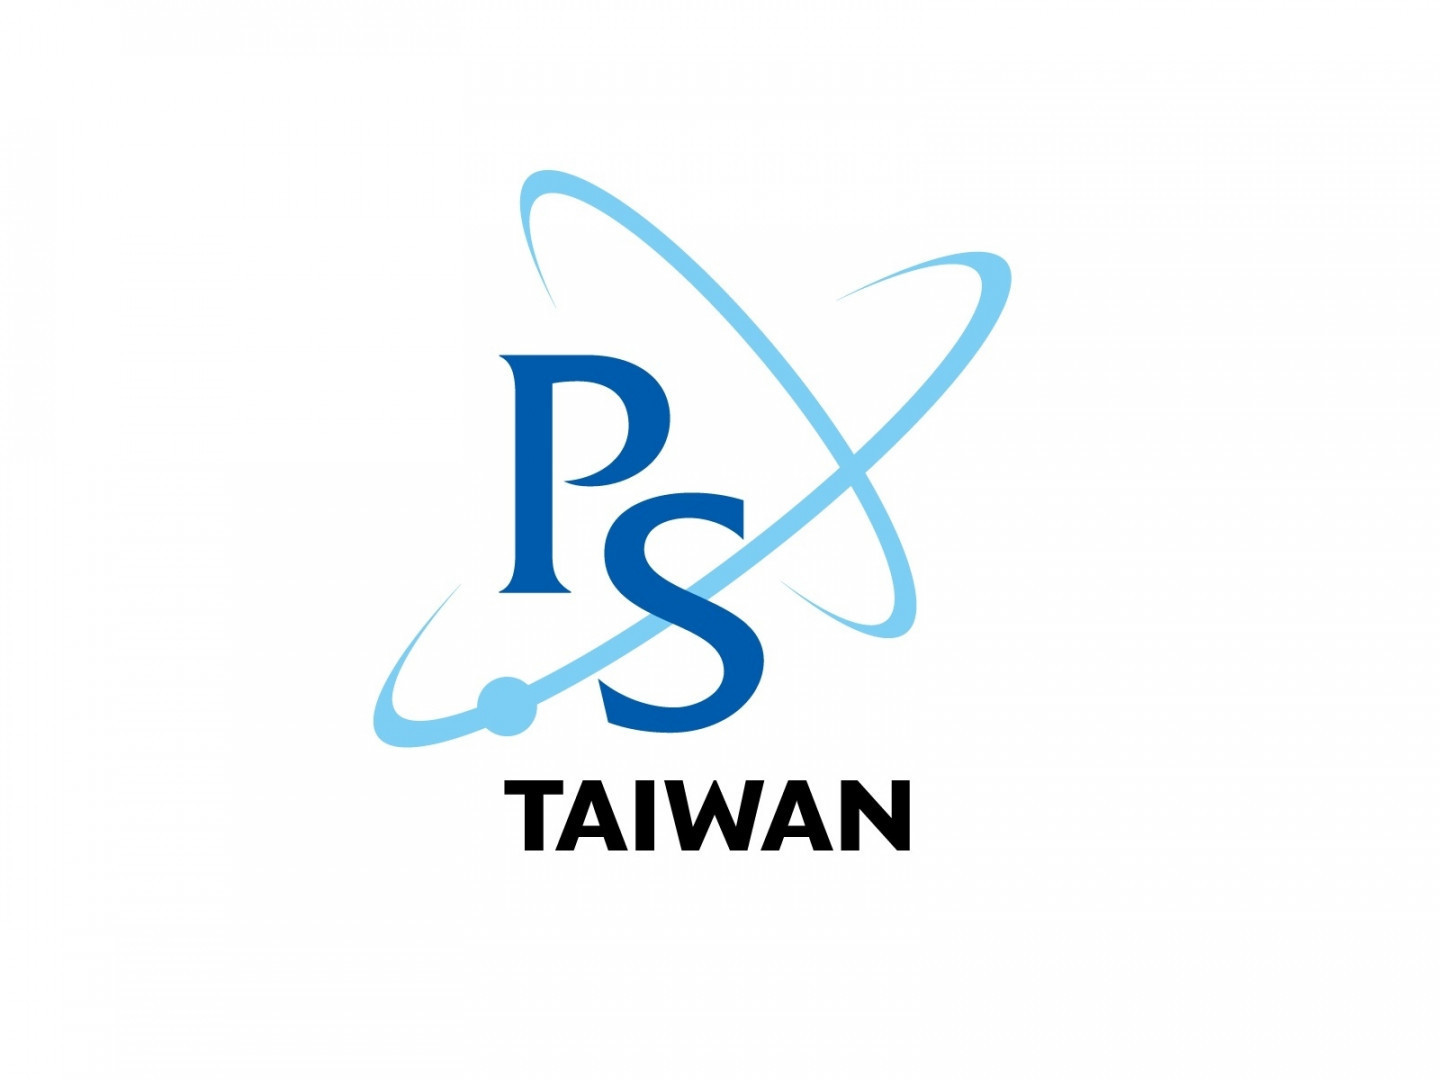  台灣物理學會產業貢獻獎 開放申請囉！ 